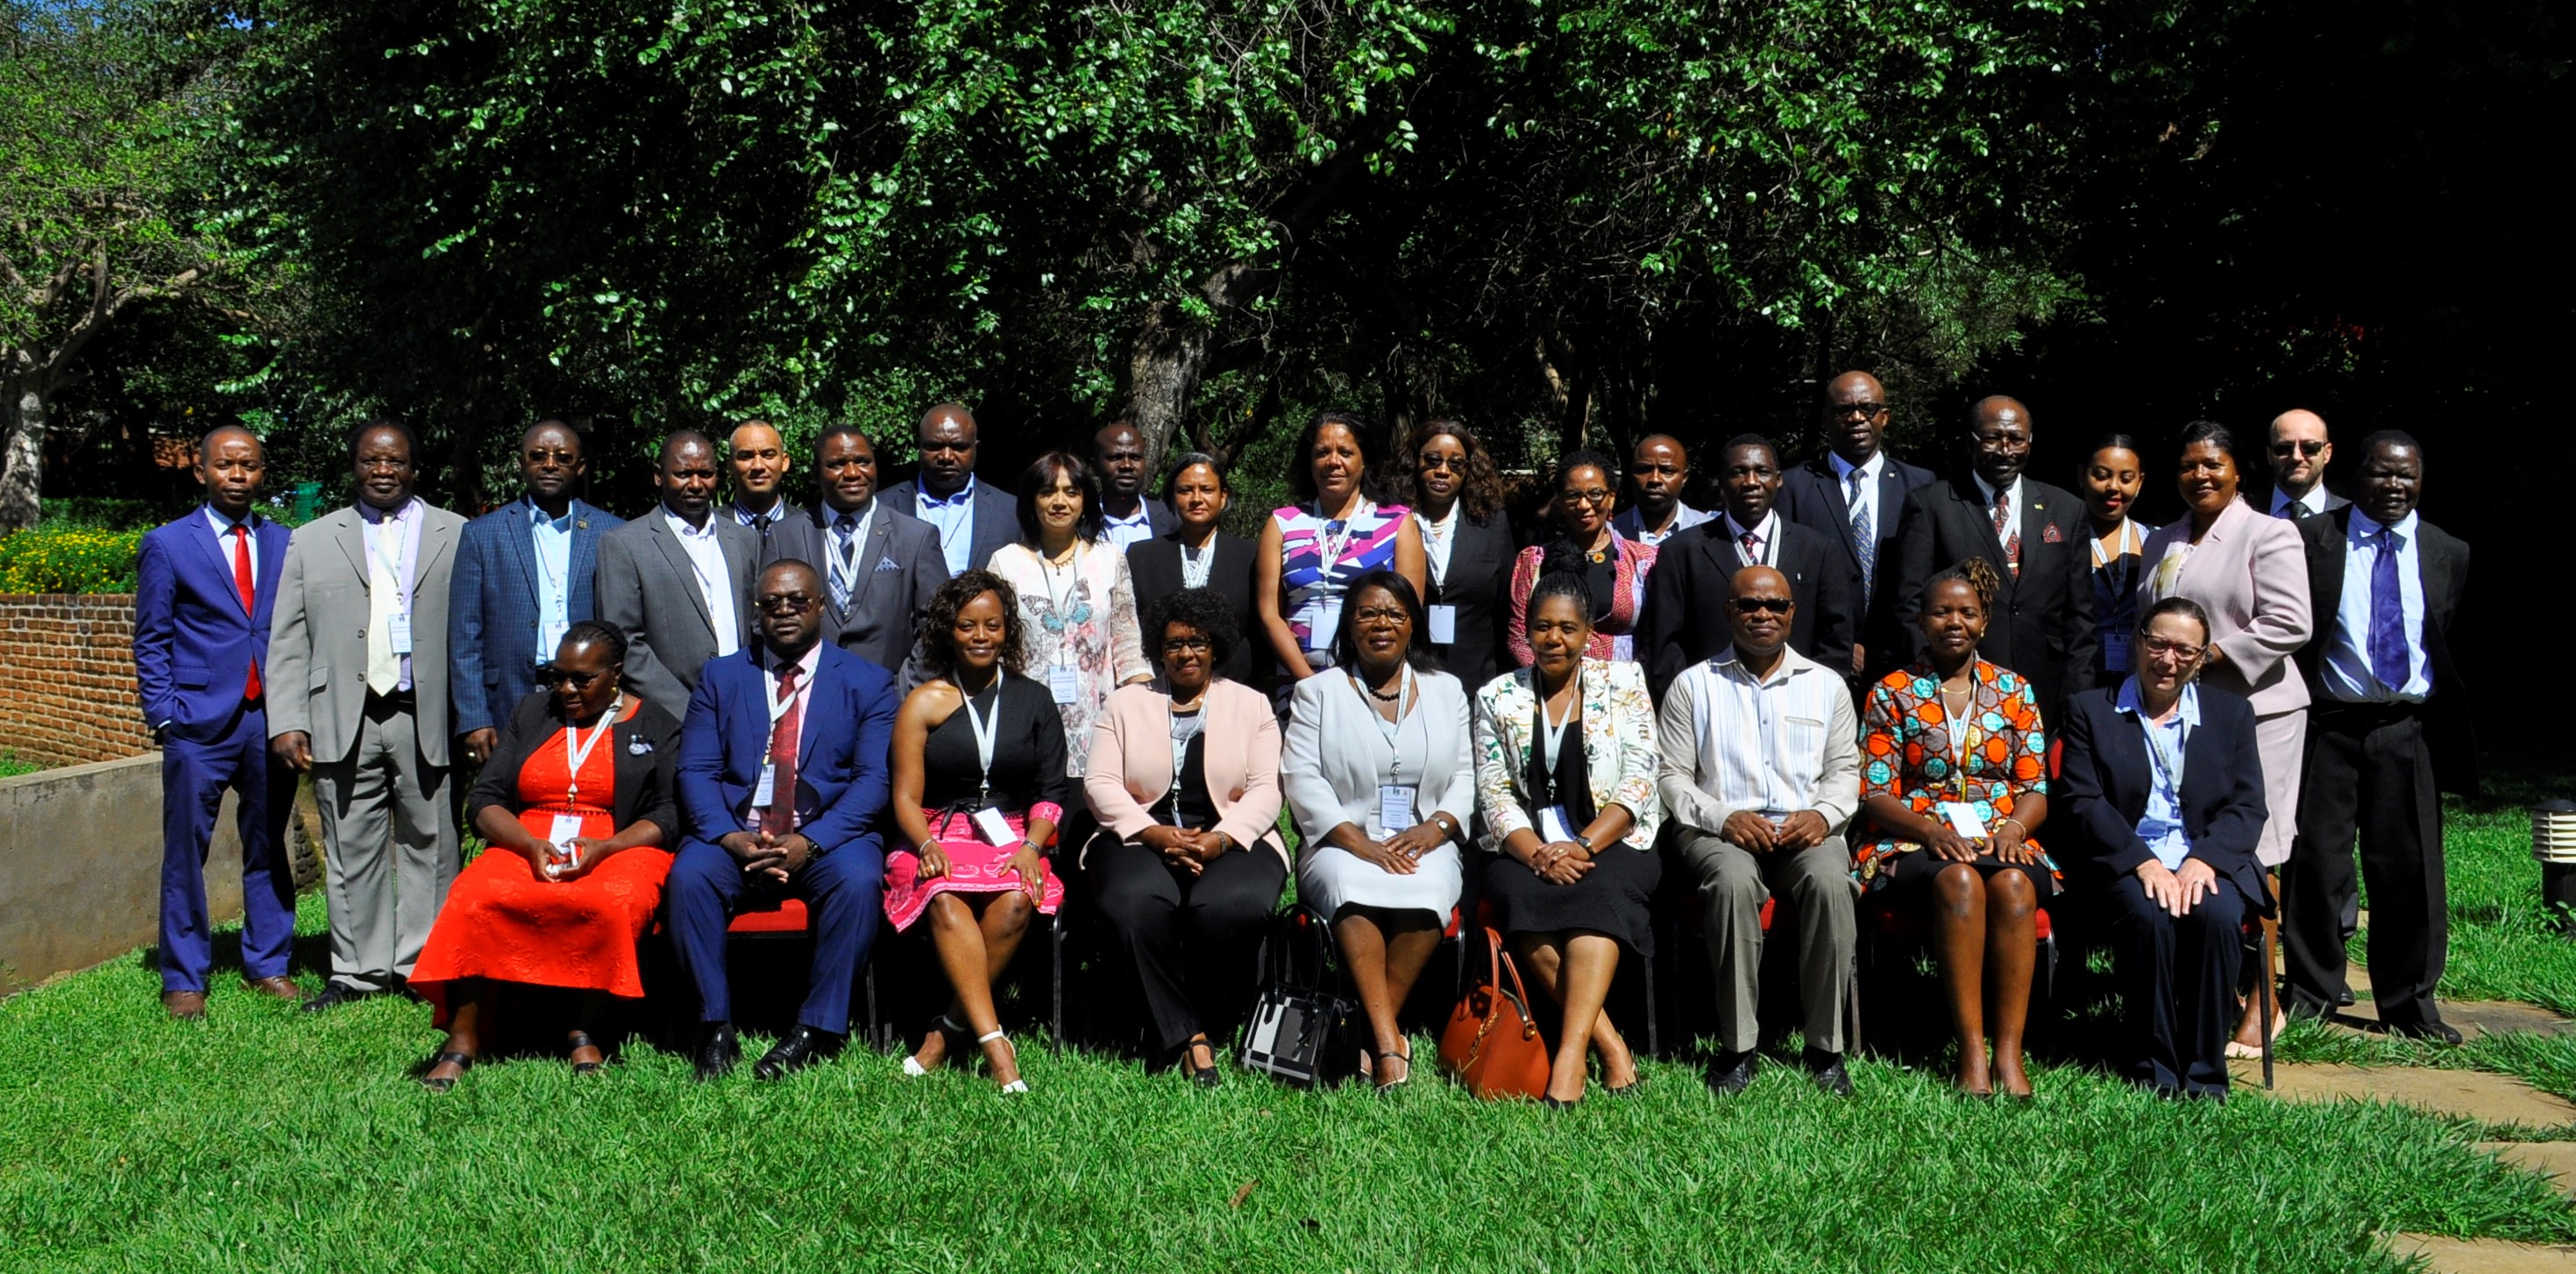 2018 New Commissioners' Orientation participants.